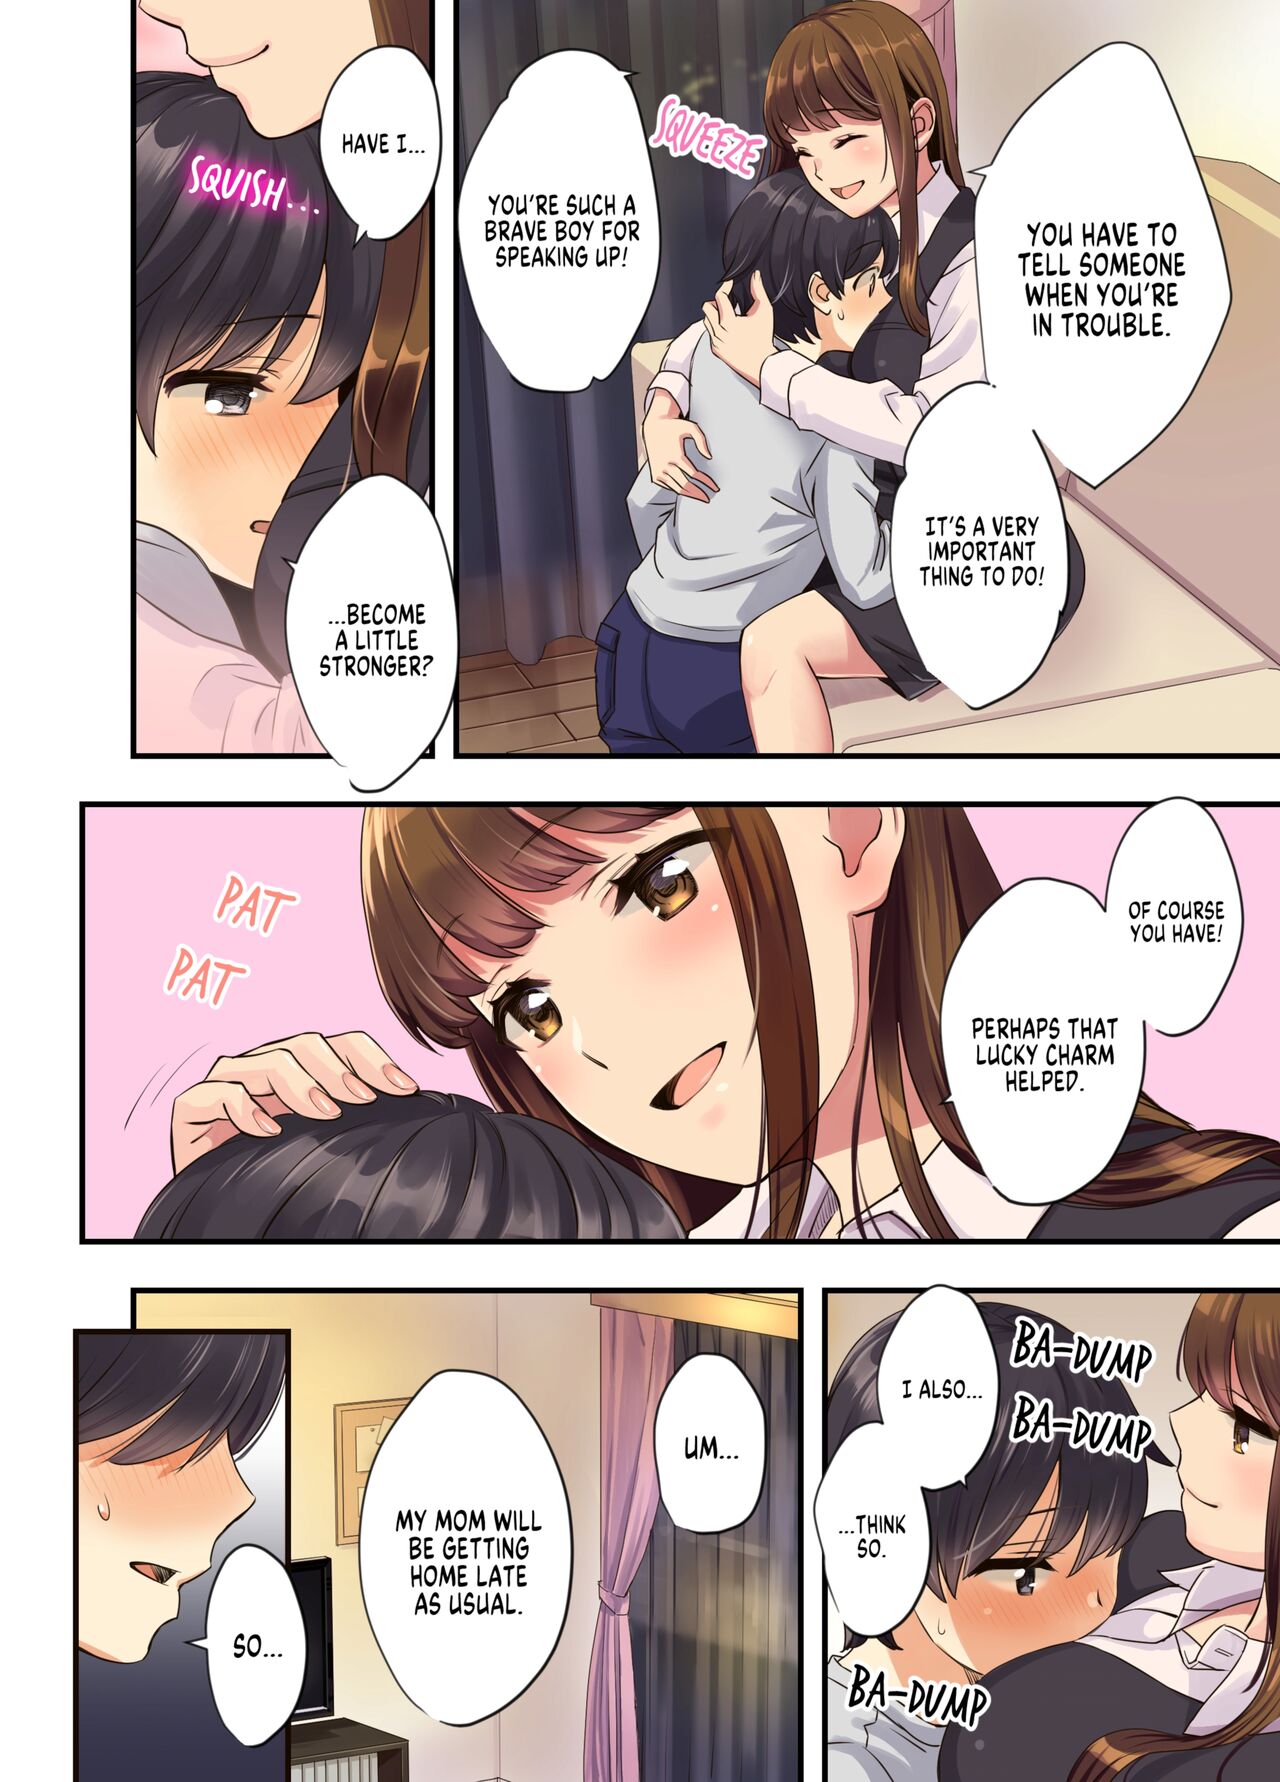 Anime Girl Next Door Hentai - The Older Girl Next Door- Oshima Aki - Porn Cartoon Comics